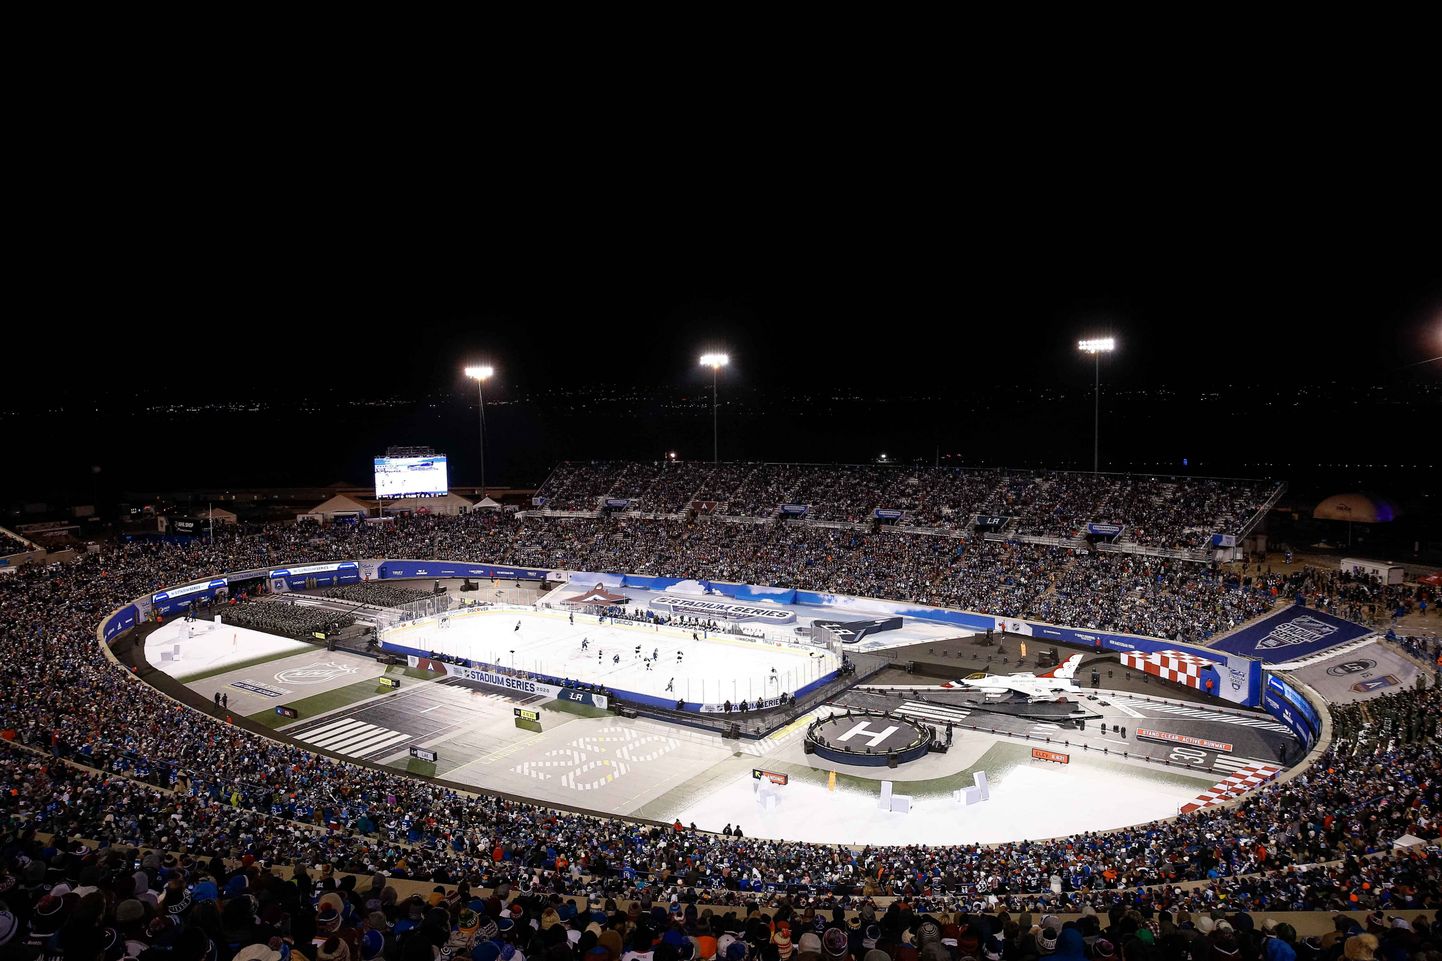 Stadions Kolorādospringsā, kurā notika NHL spēle starp Kolorādo "Avalanche" un Losandželosas "Kings".